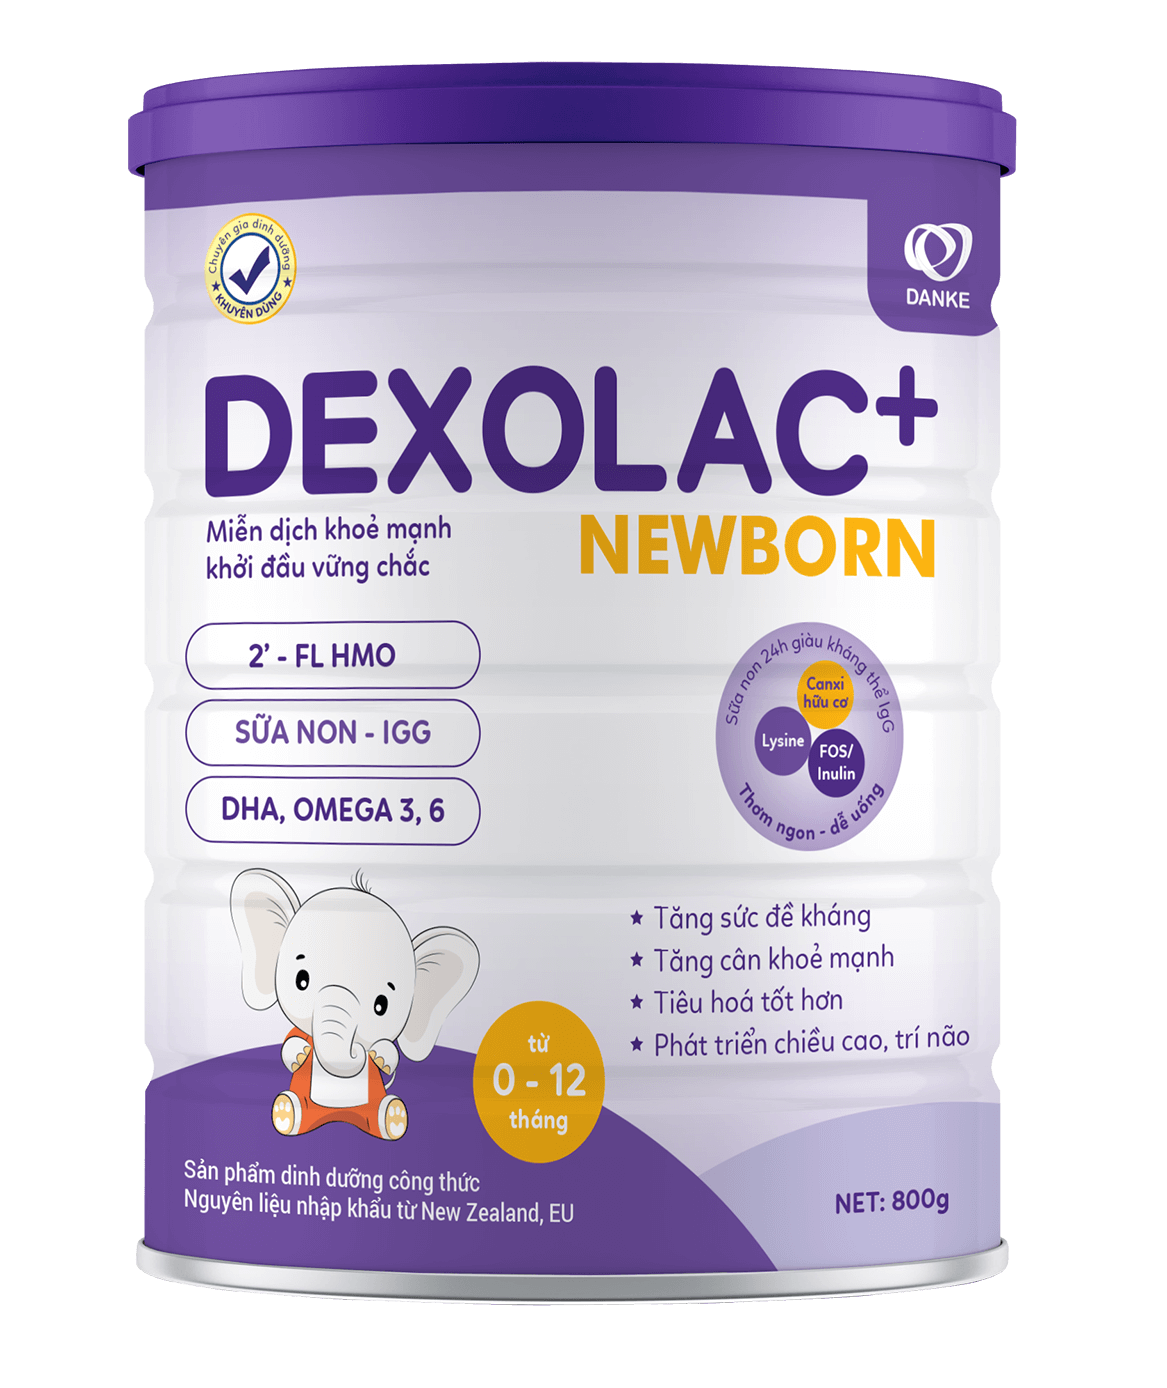 Sữa Dexolac+ Newborn